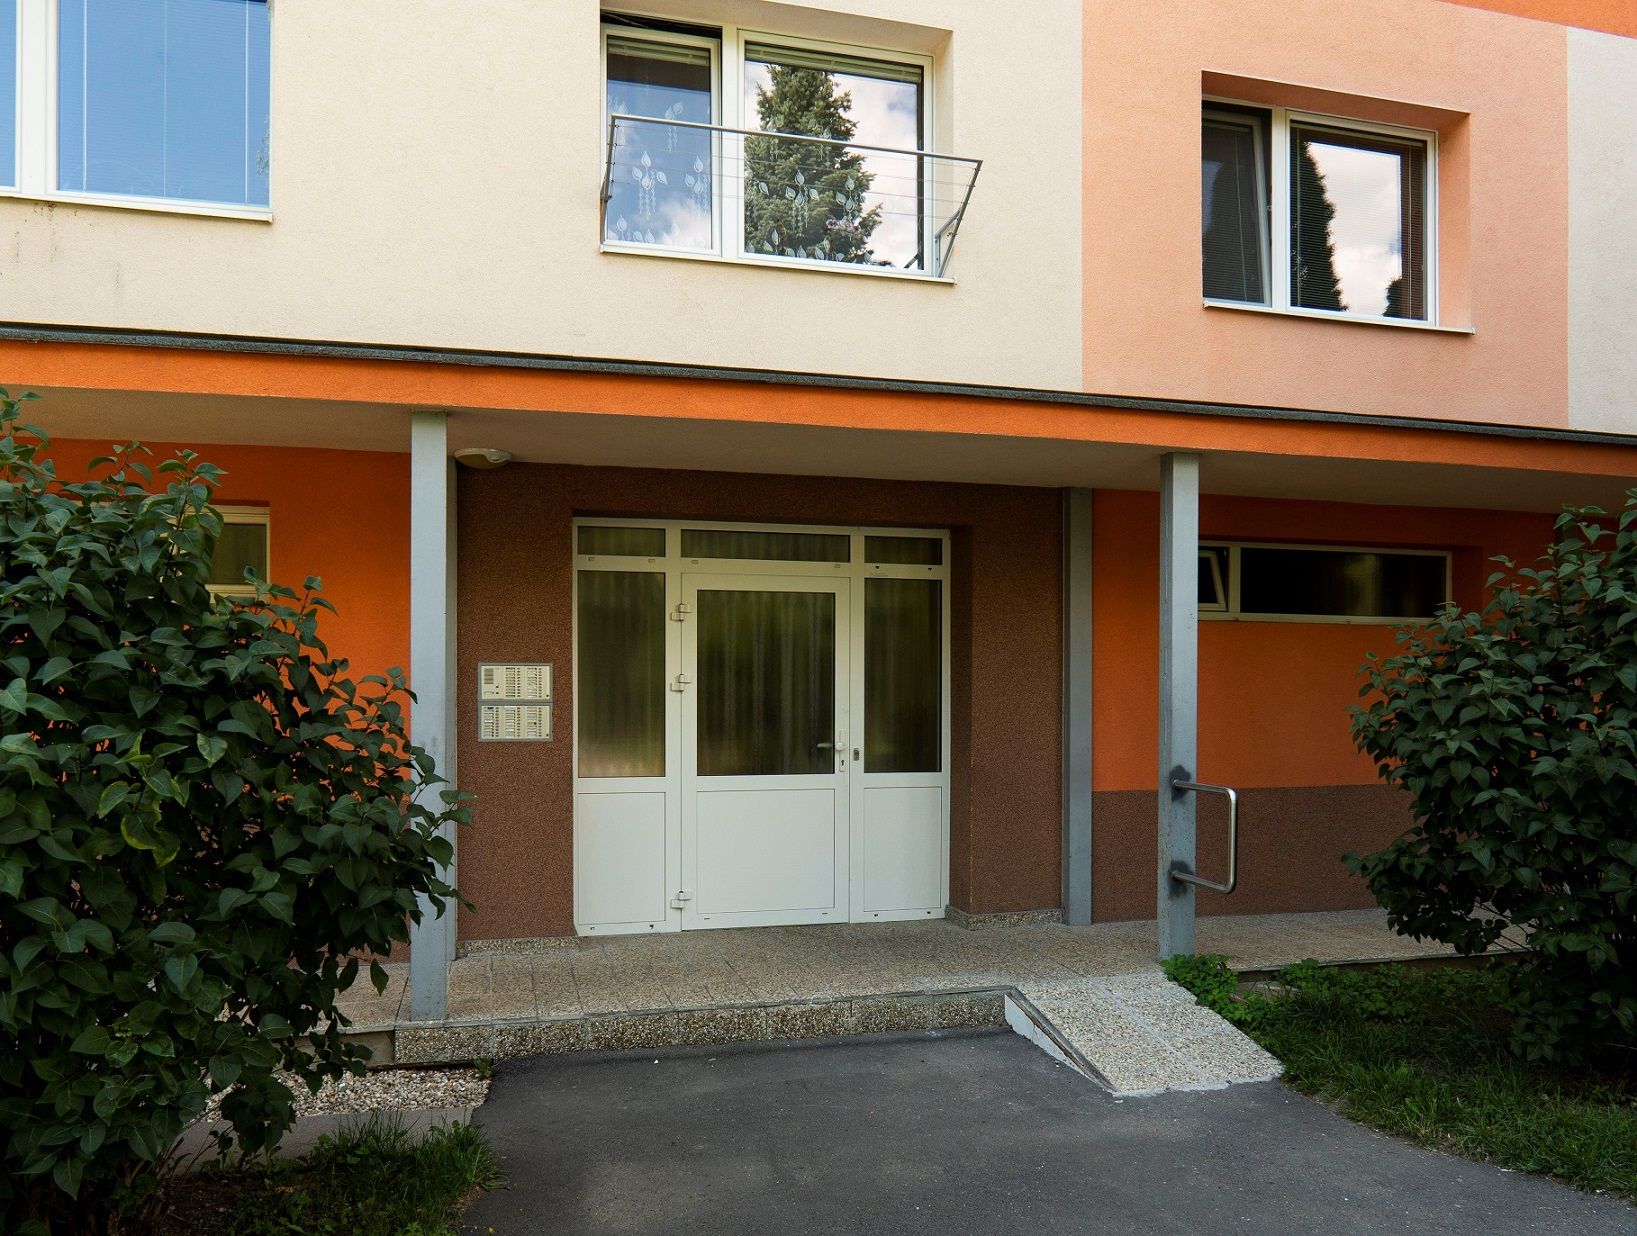 PREDANÝ: 1-izbový byt v pôvodnom stave, 3. posch., 44 m2, ul. J. Francisciho, sídl. Západ I, Levoča